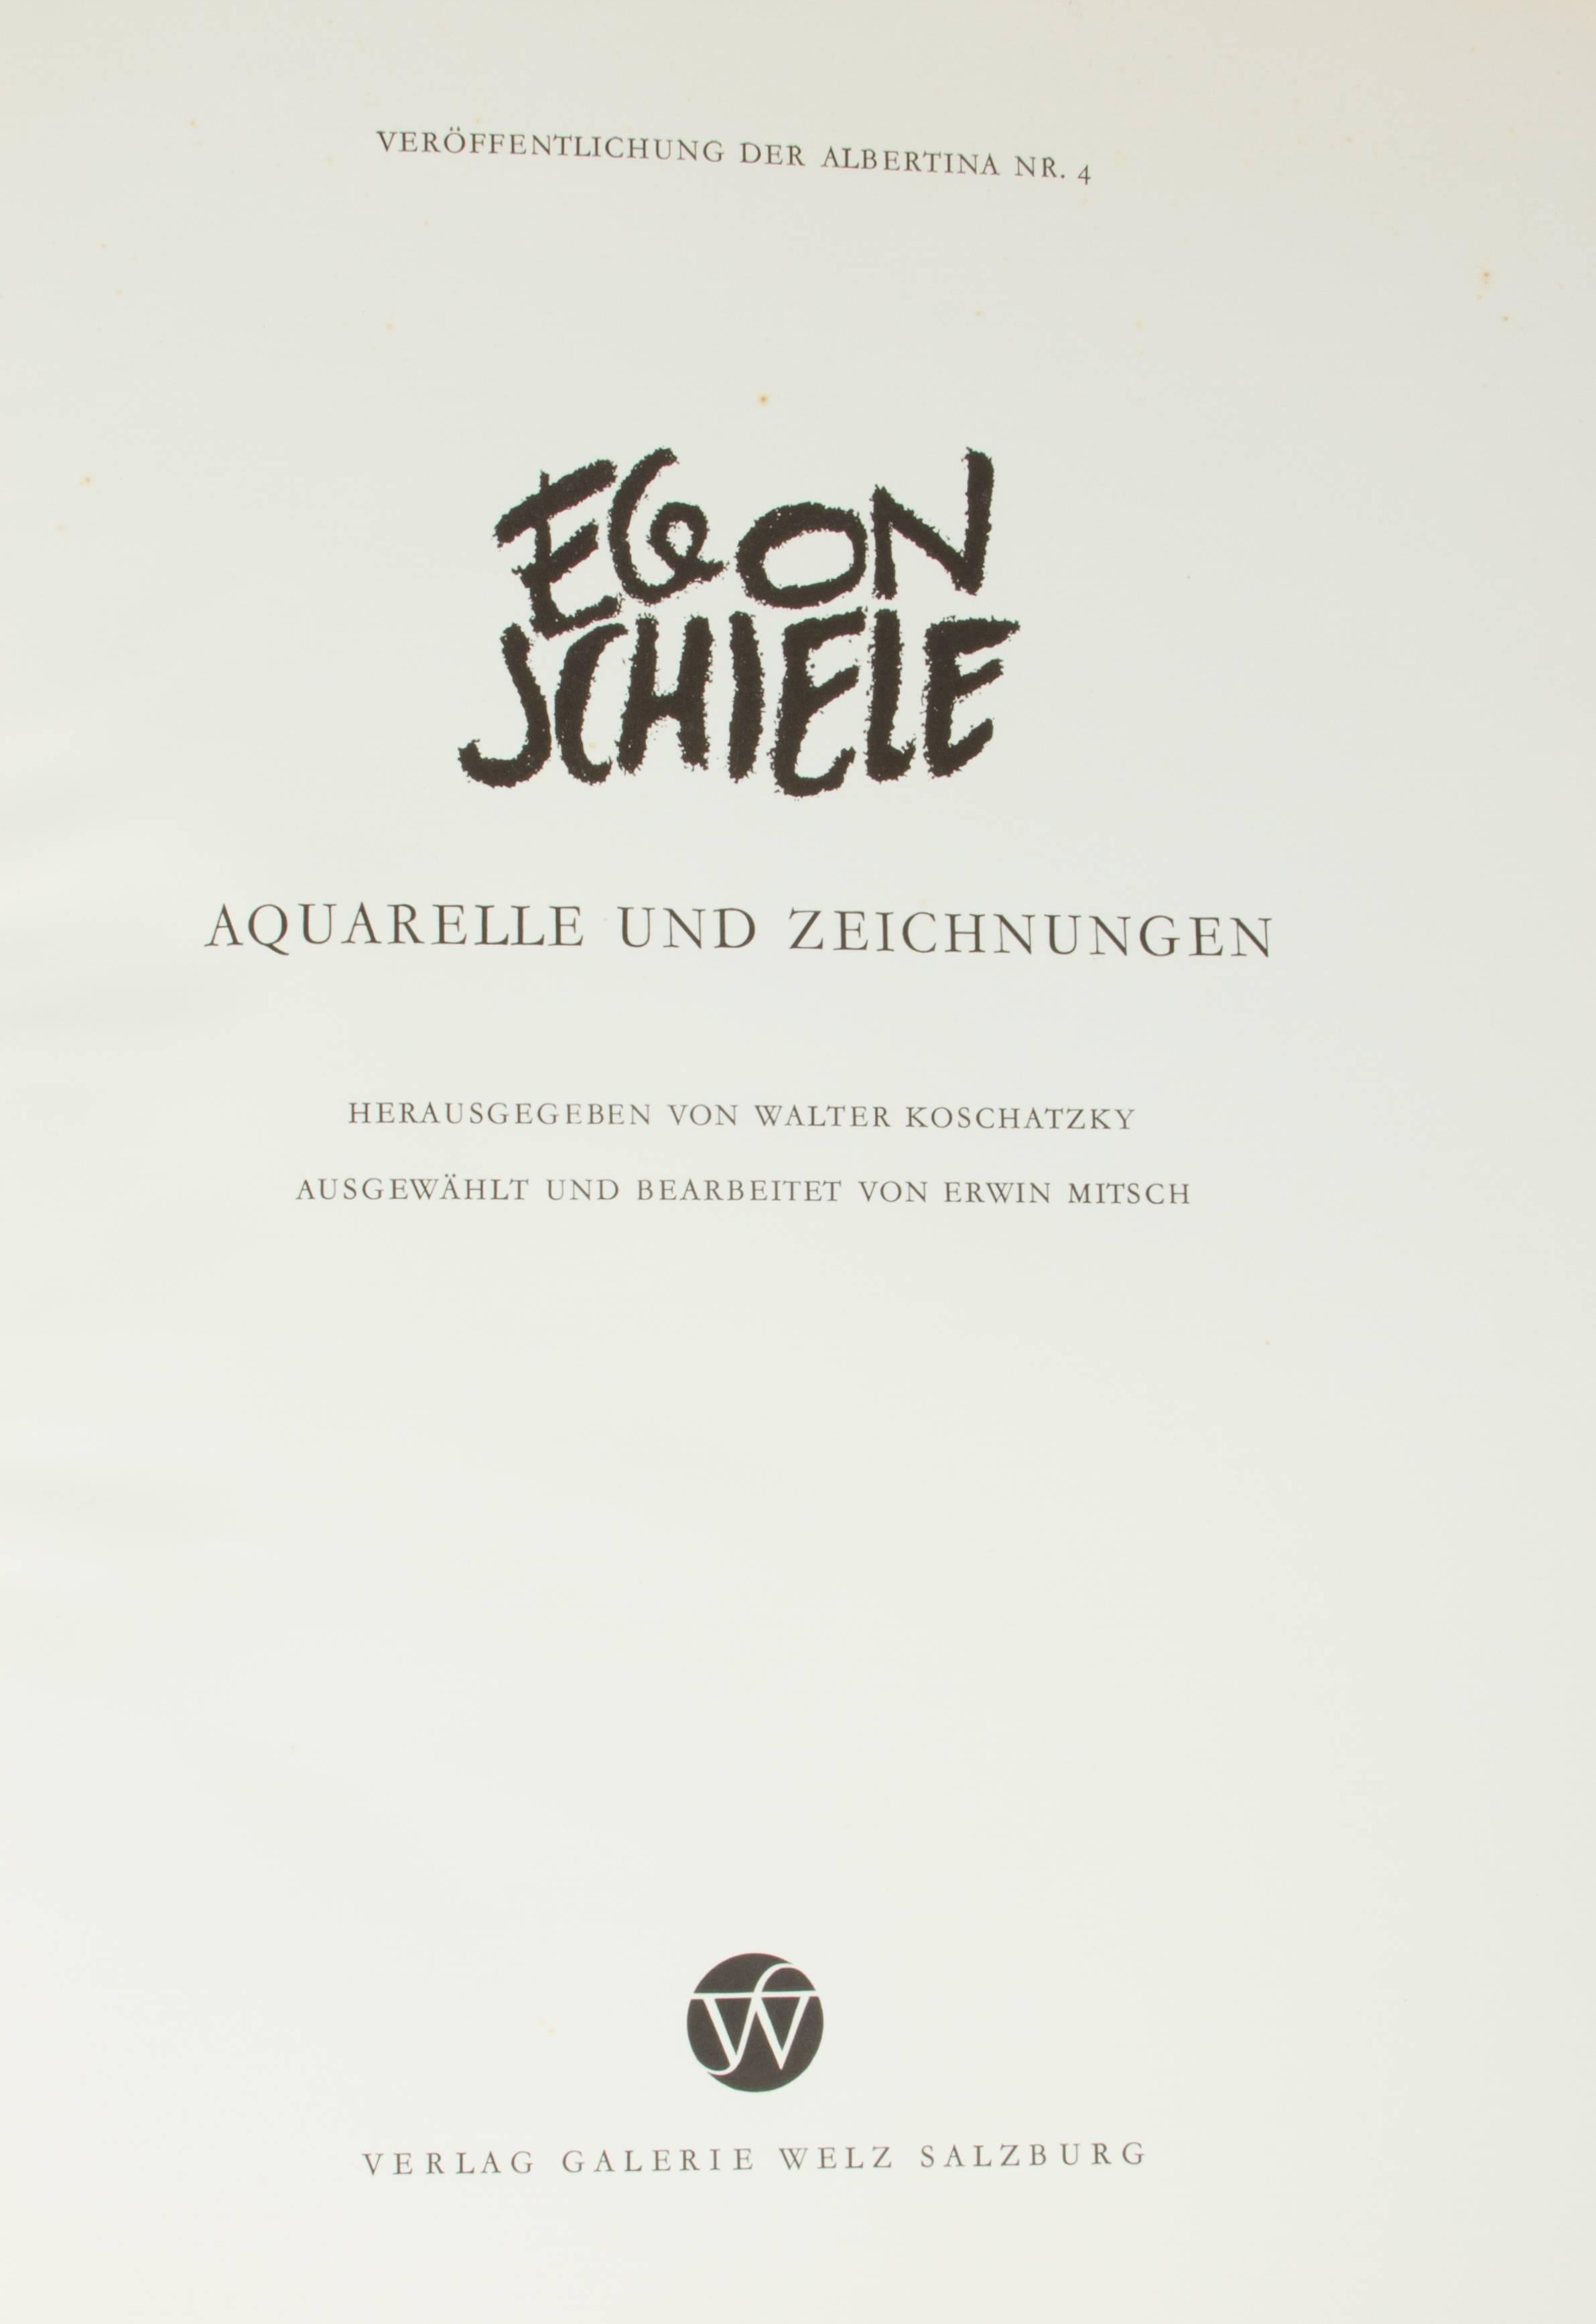 Egon Schiele 